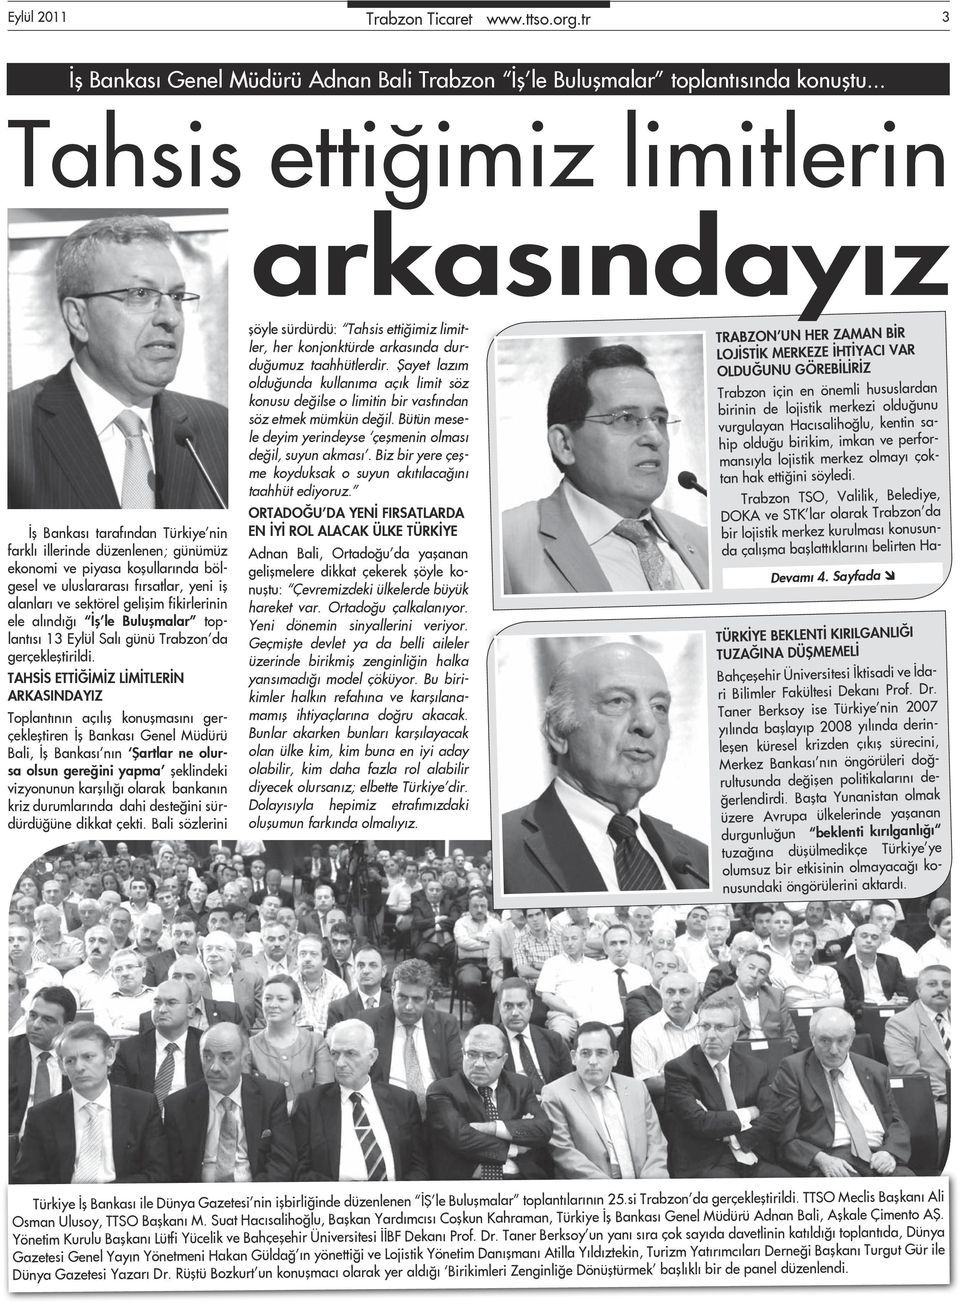 ve sektörel gelişim fikirlerinin ele alındığı İş le Buluşmalar toplantısı 13 Eylül Salı günü Trabzon da gerçekleştirildi.